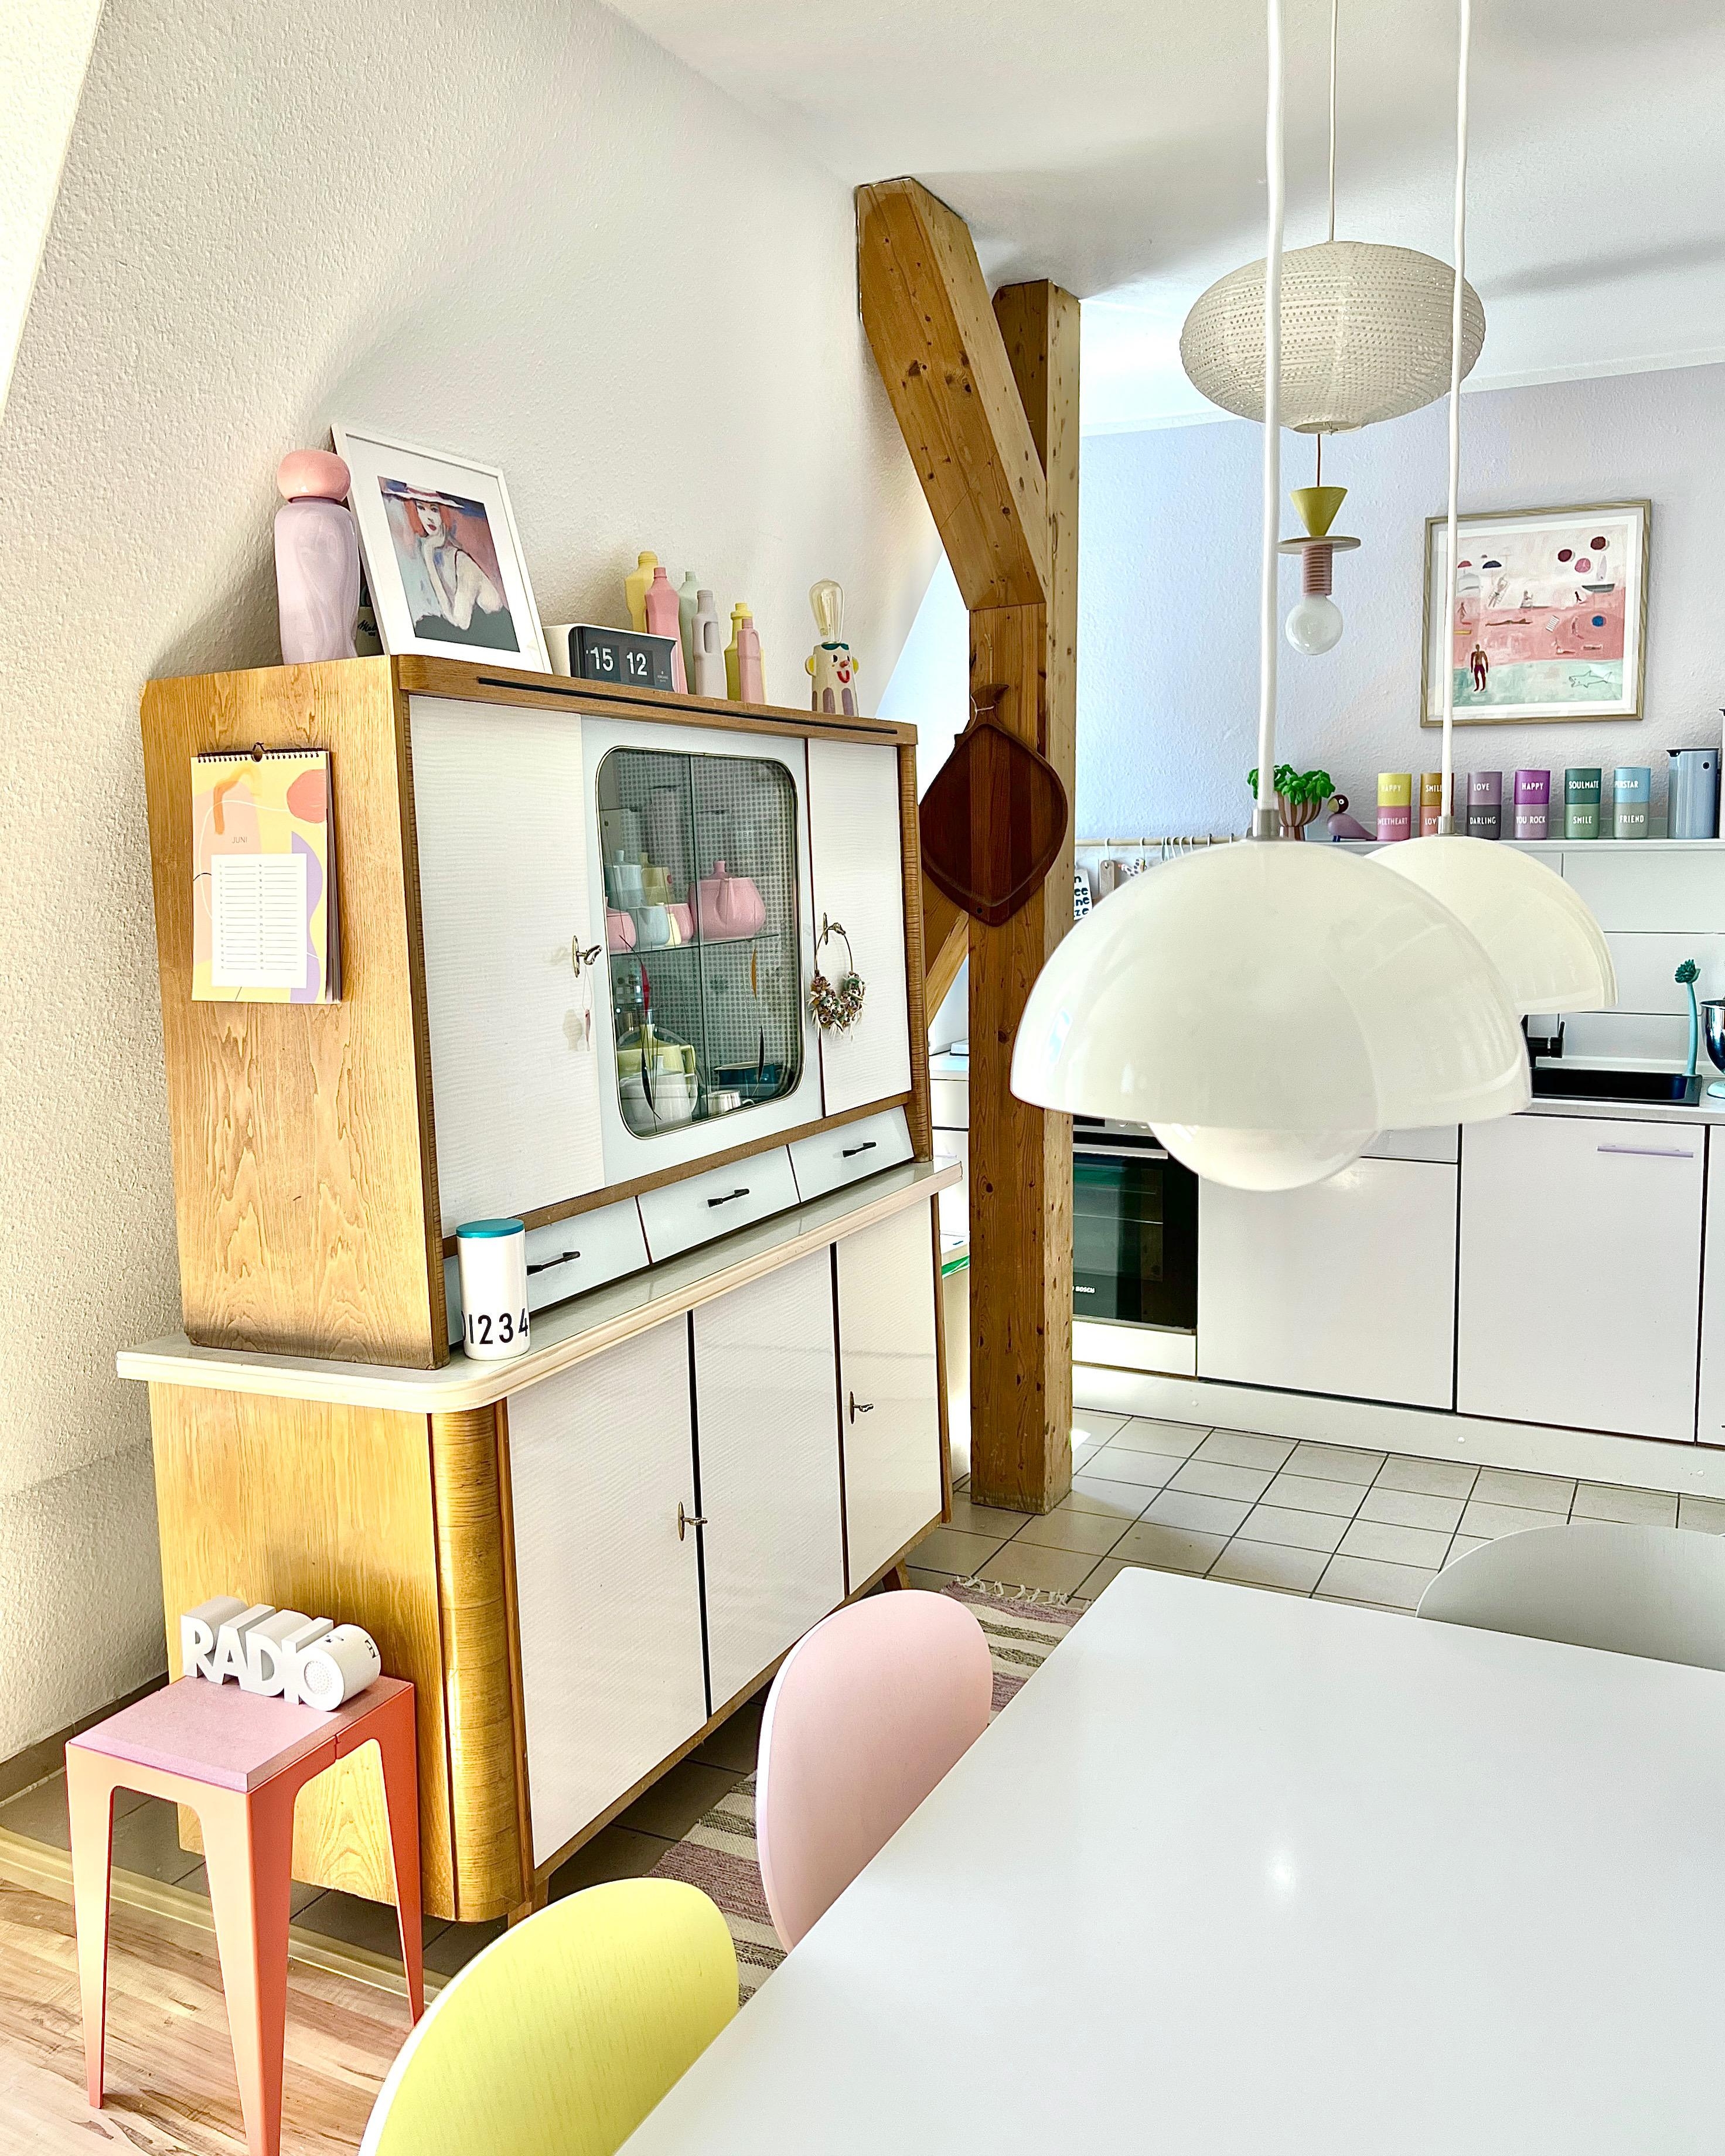 #interior #interiordesign #couchliebt #küche #pastell #küchenzeile #studioarhoj #rosa #buffet #midcentury #flowerpot #💕